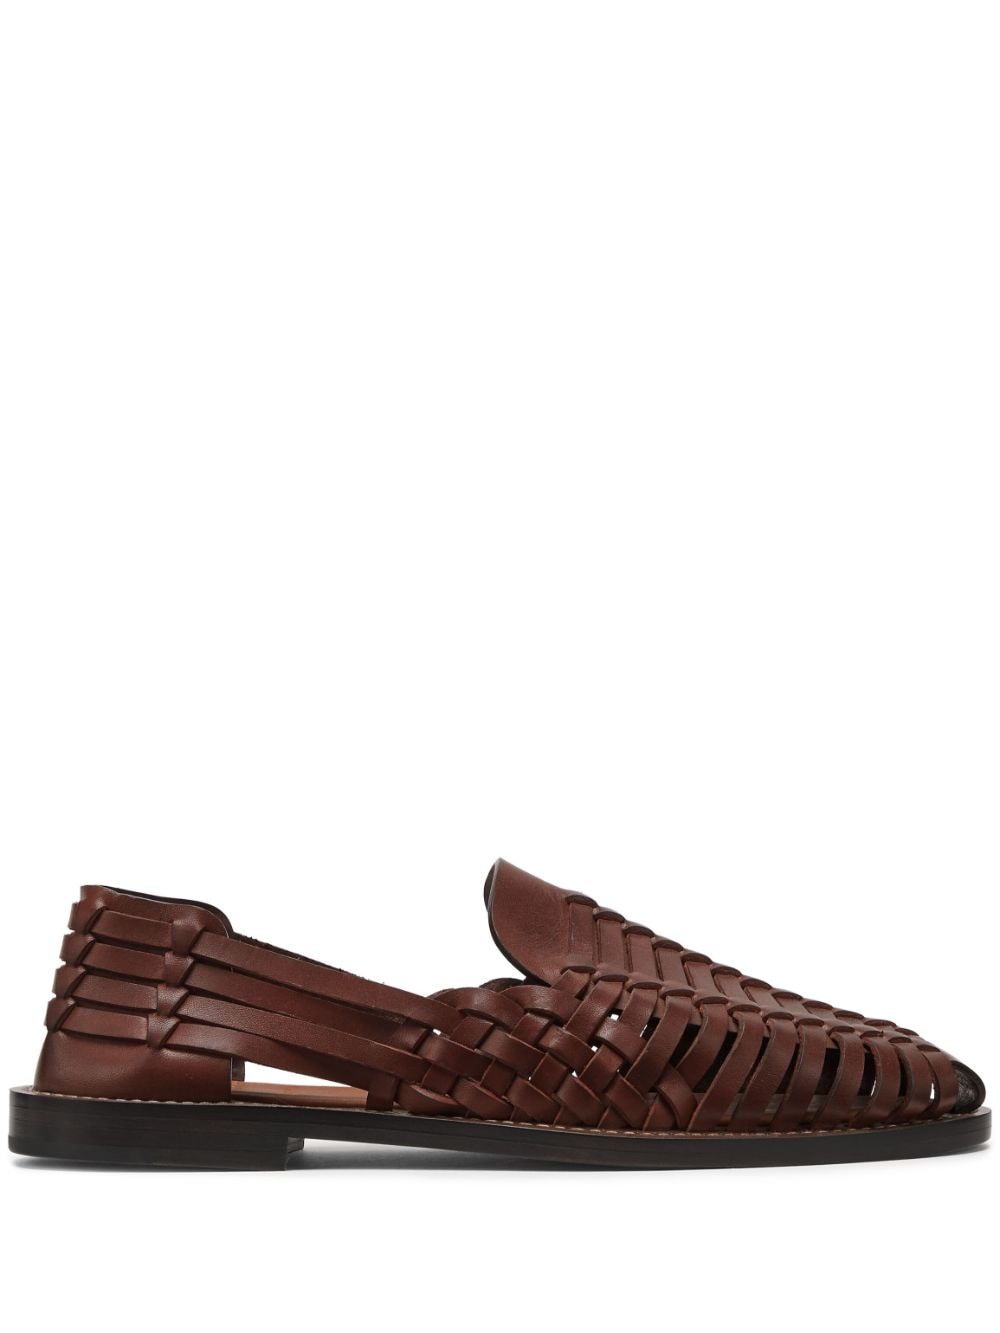 Brunello Cucinelli interwoven leather sandals - Brown von Brunello Cucinelli